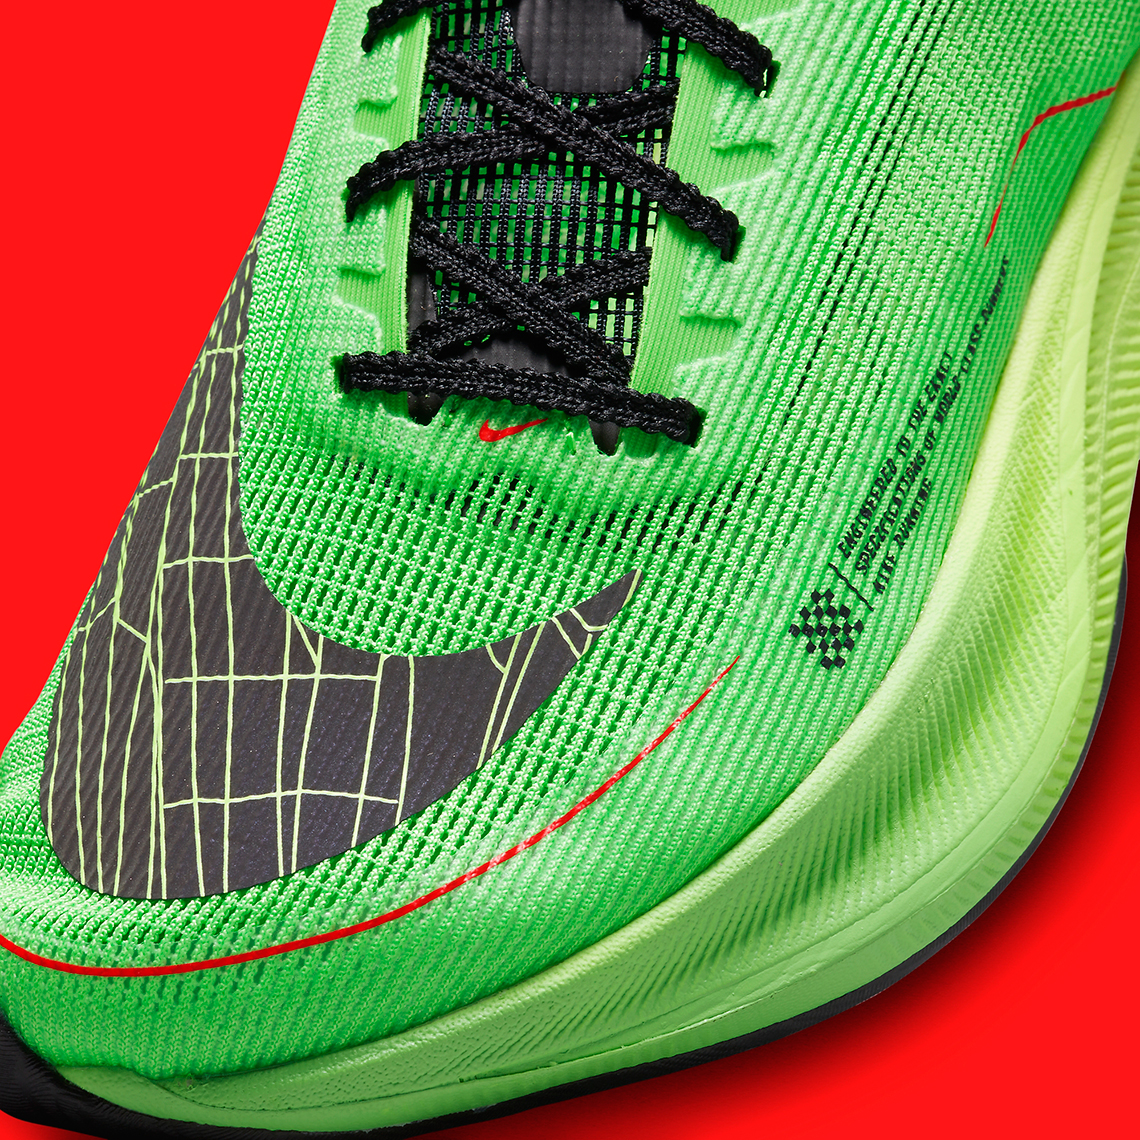 1670717203 259 ZoomX VaporFly NEXT 2 de Nike EKIDEN presentado en colores